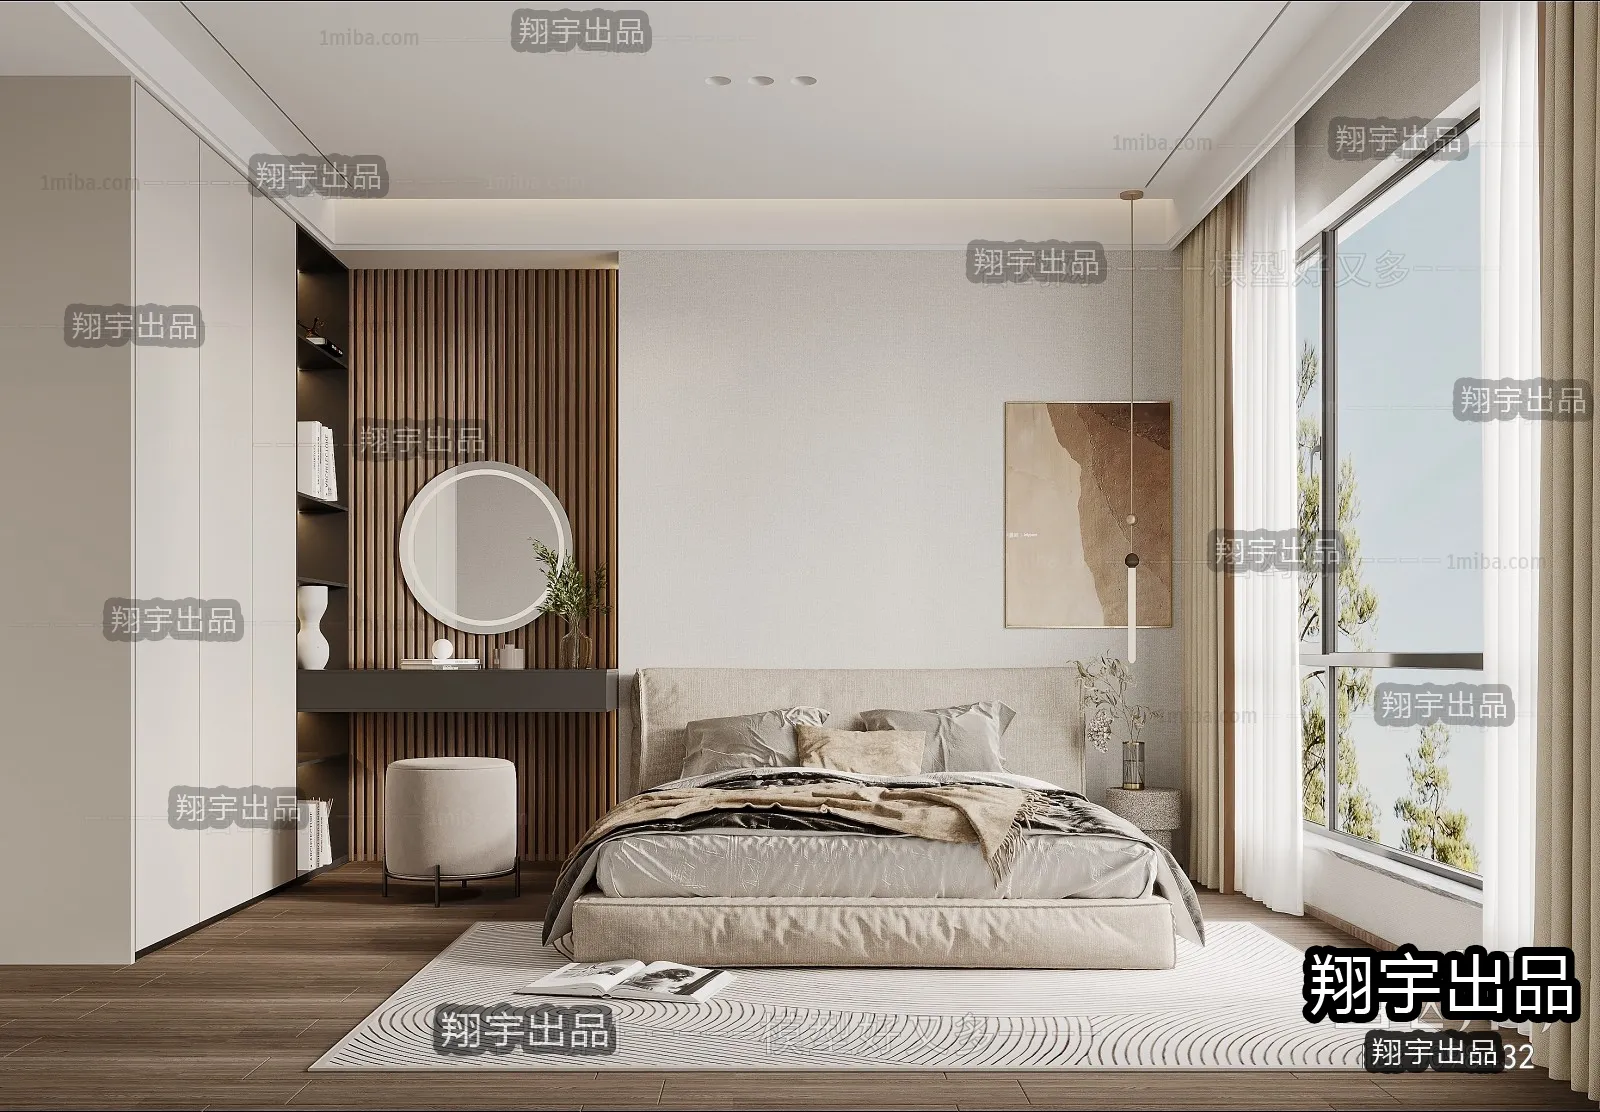 Bedroom – Scandinavian architecture – 009